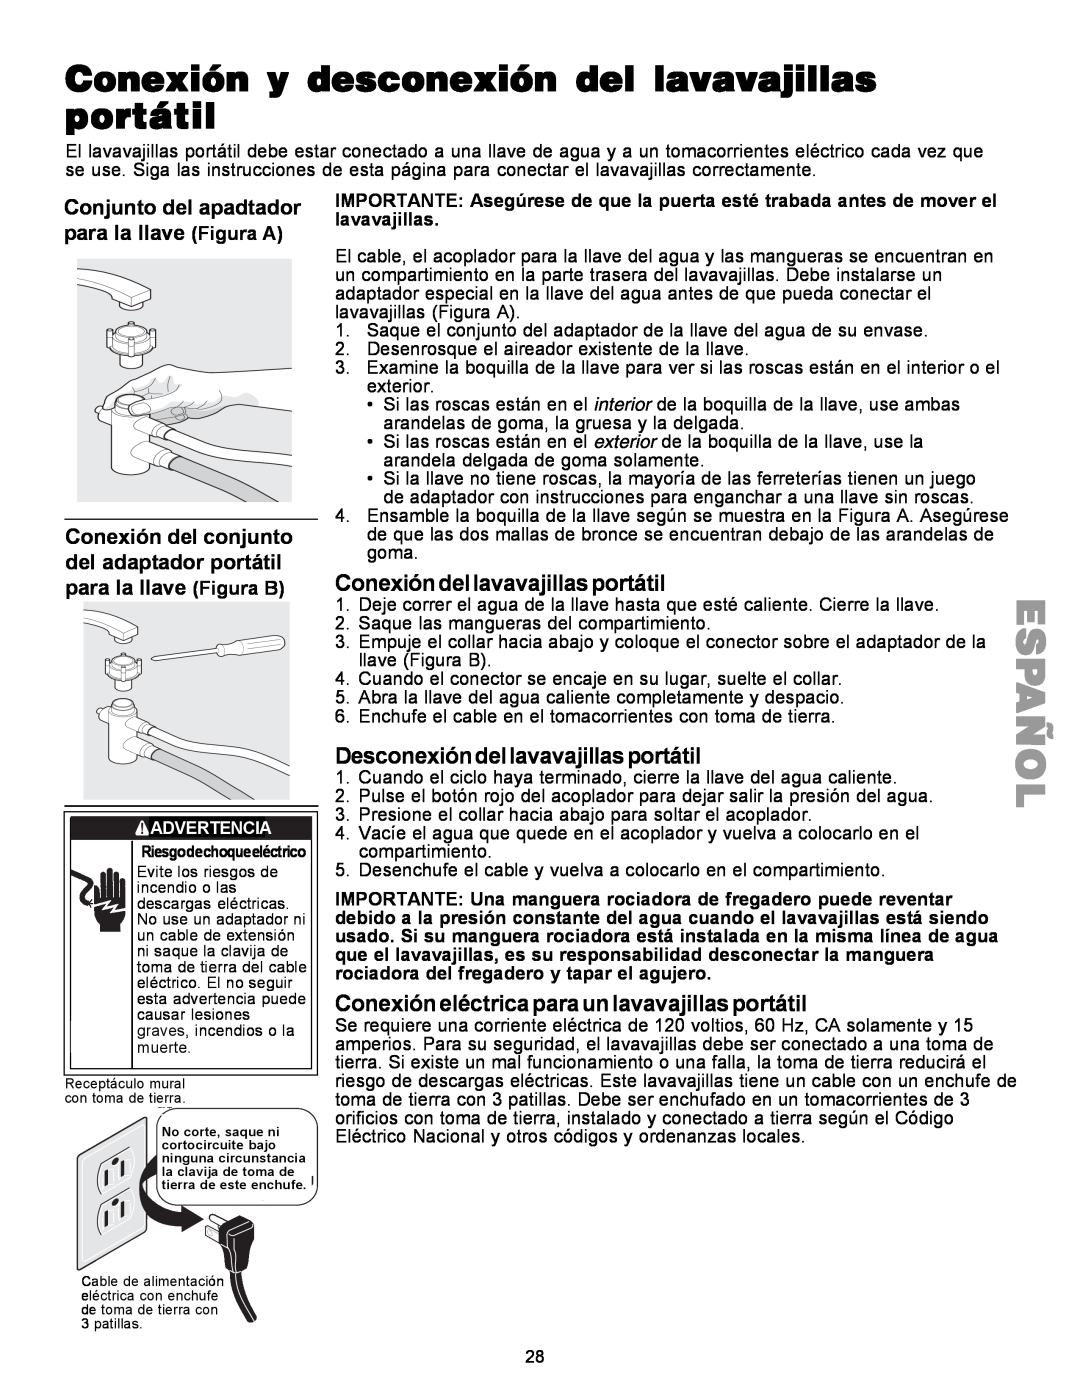 Kenmore 587.1441 manual Conexión y desconexión del lavavajillas portátil, Conexióndellavavajillasportátil 